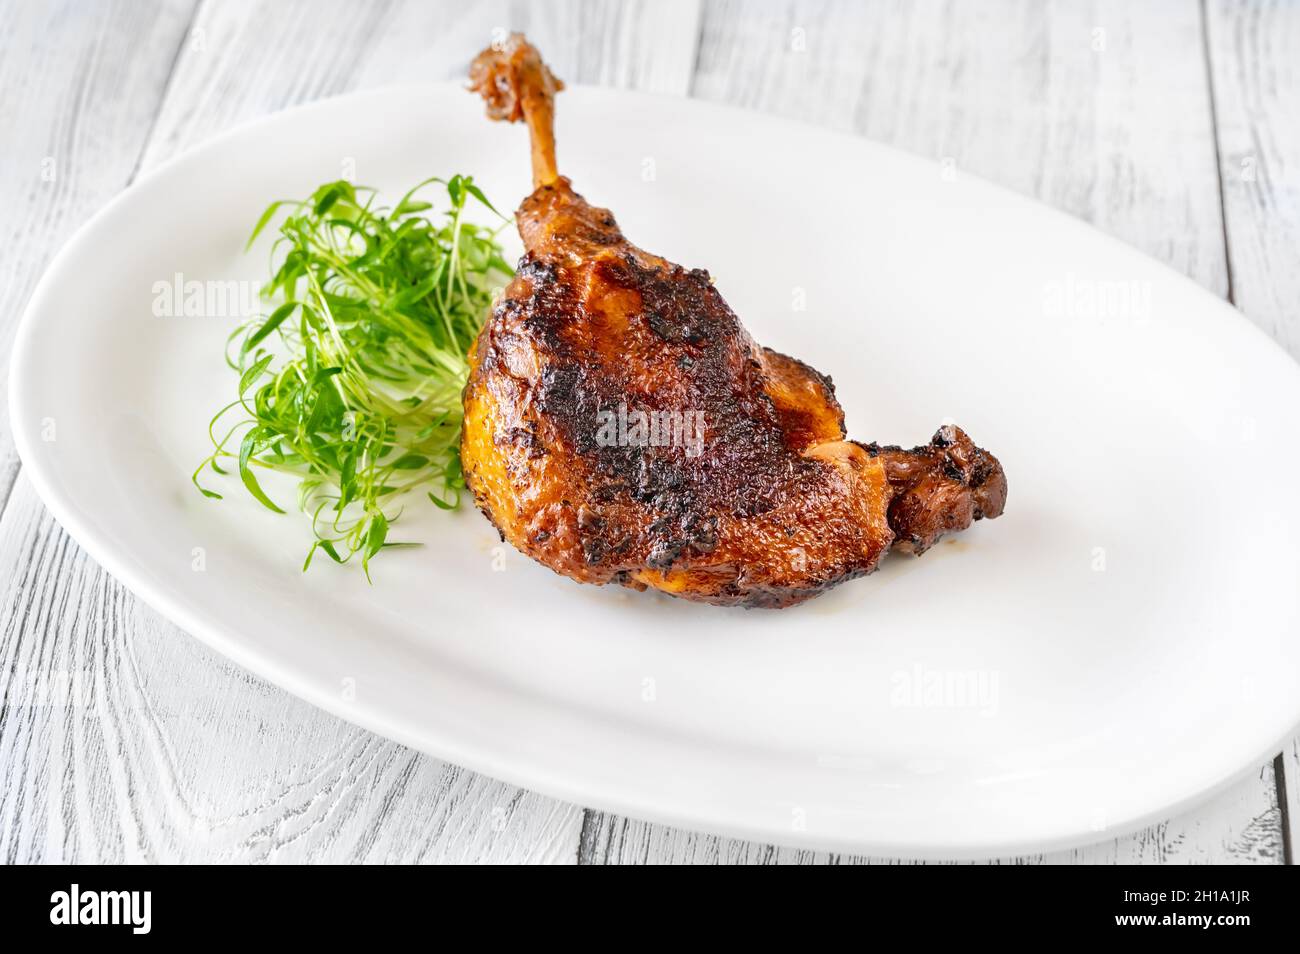 Confit de canard - un plat français fait avec les pattes de canard Banque D'Images